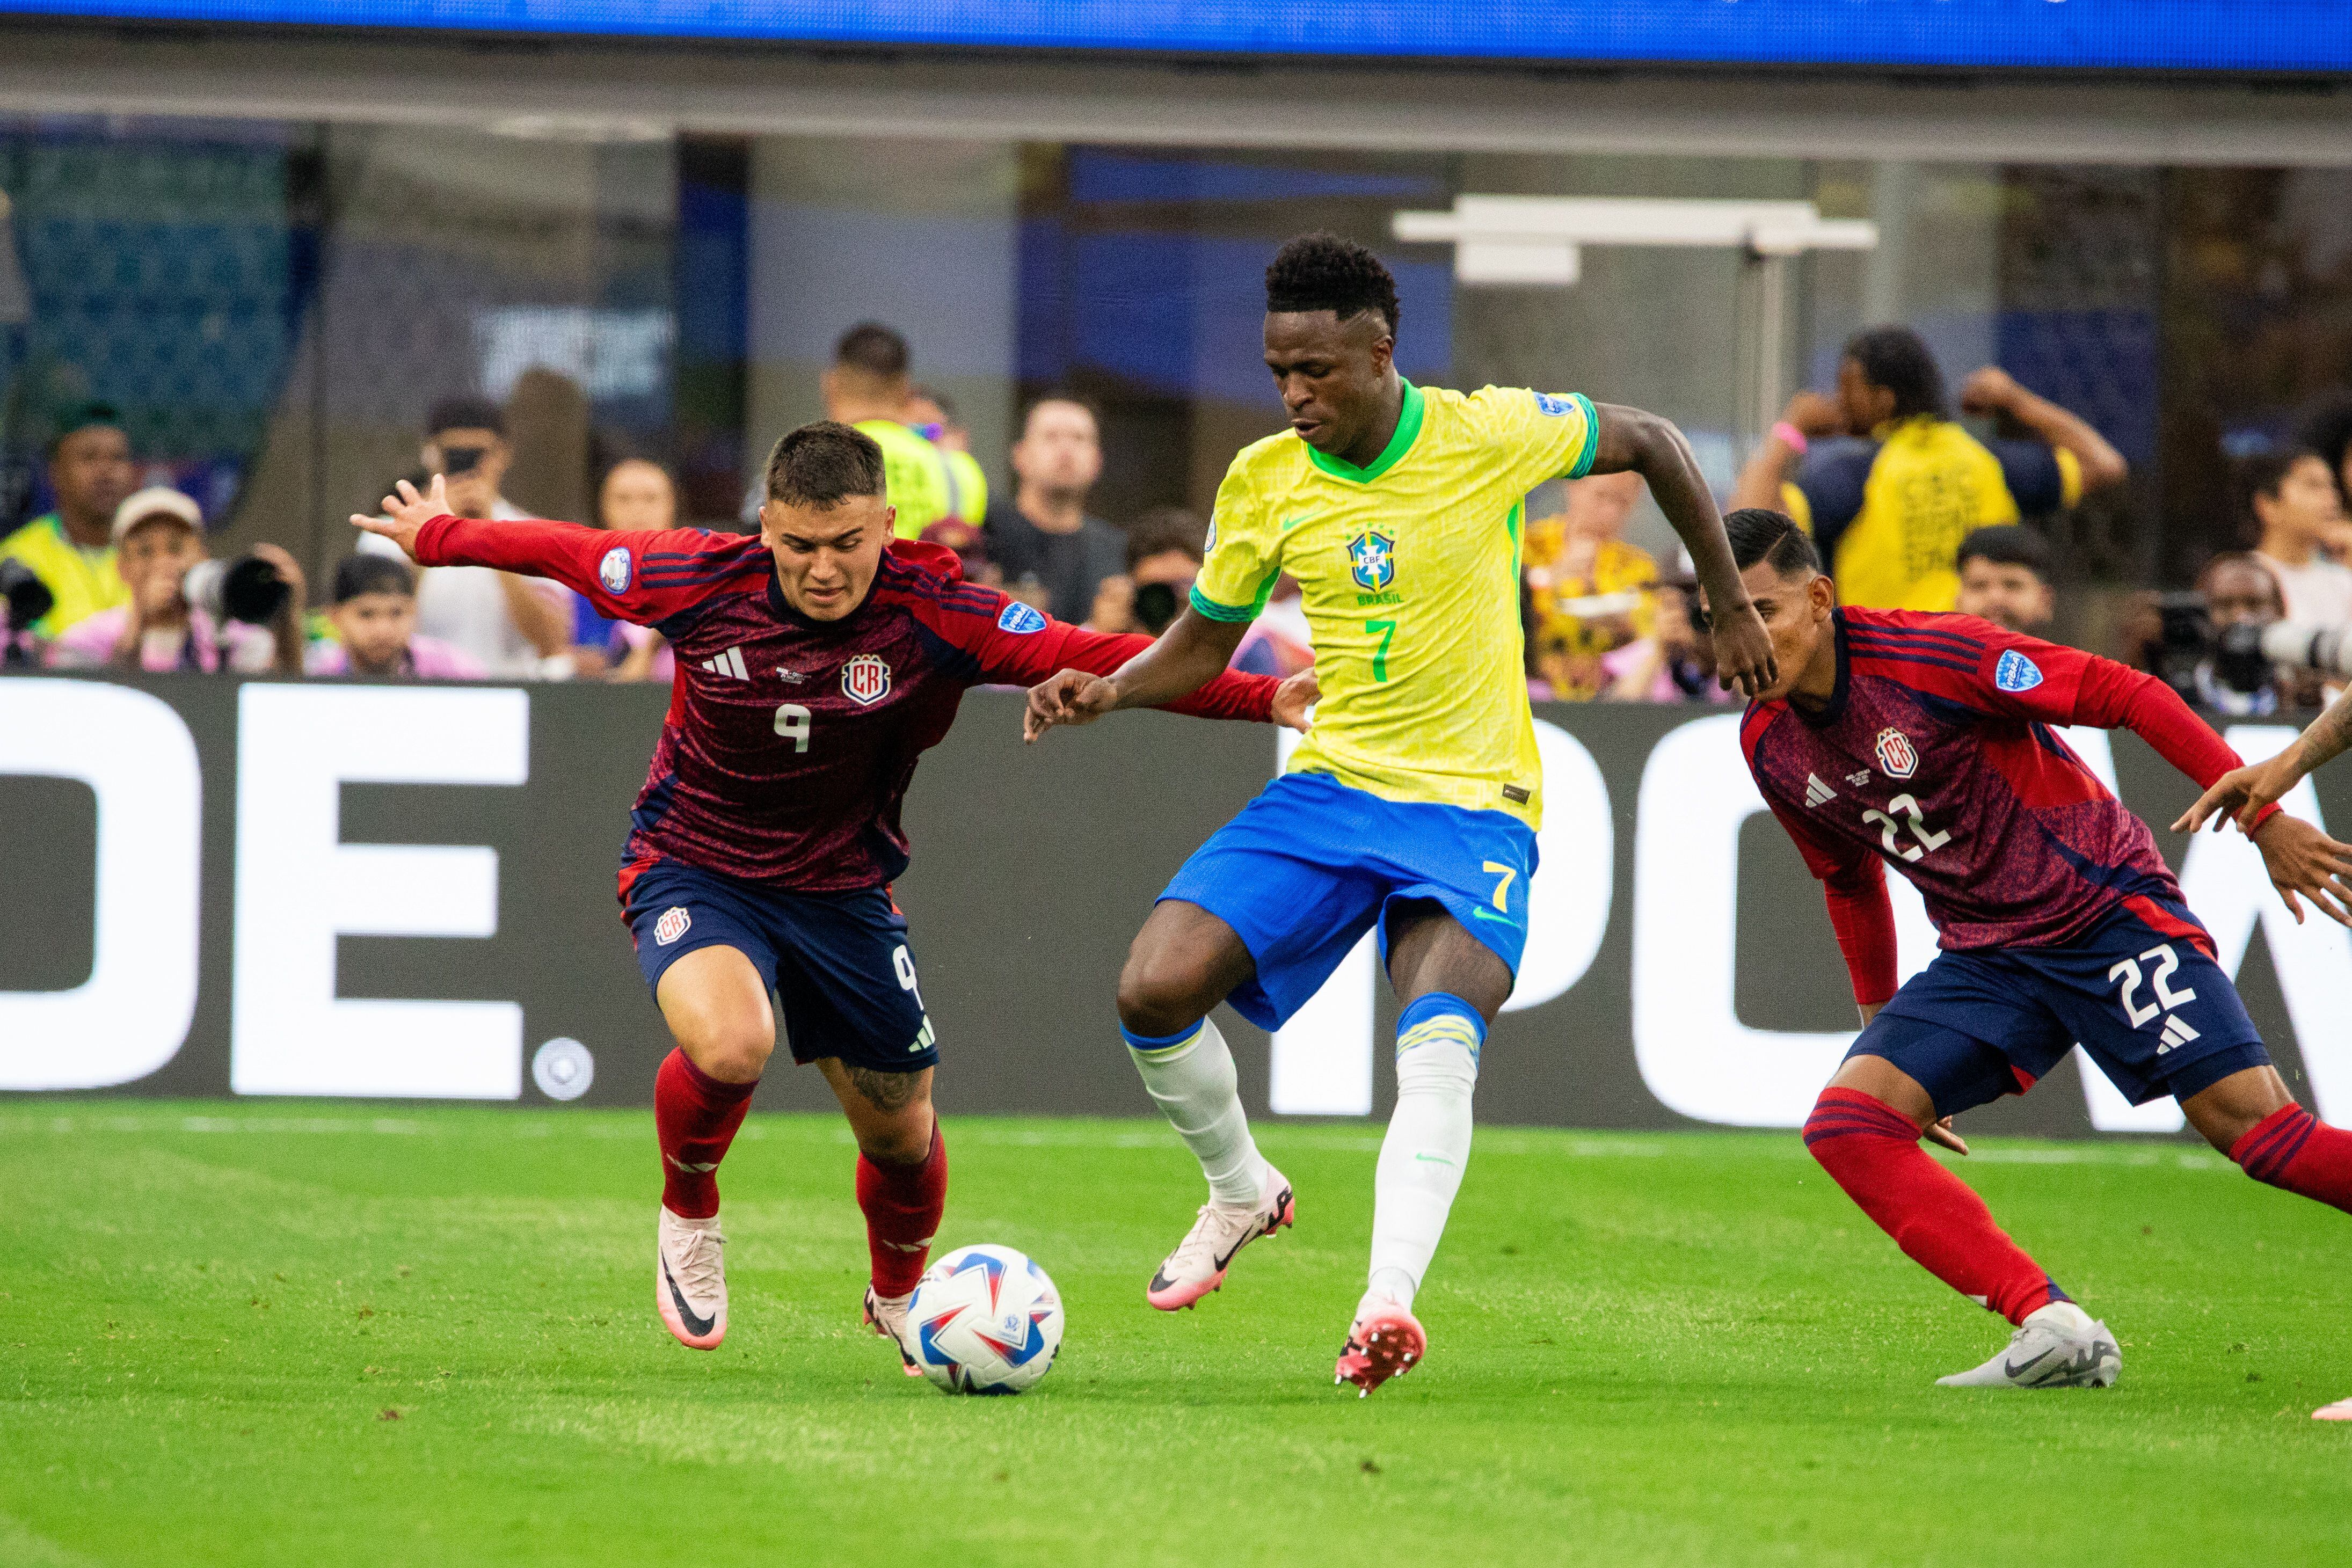 Campo reducido y defensa de Costa Rica complicaron a Brasil en la Copa América, según periodista brasileño.